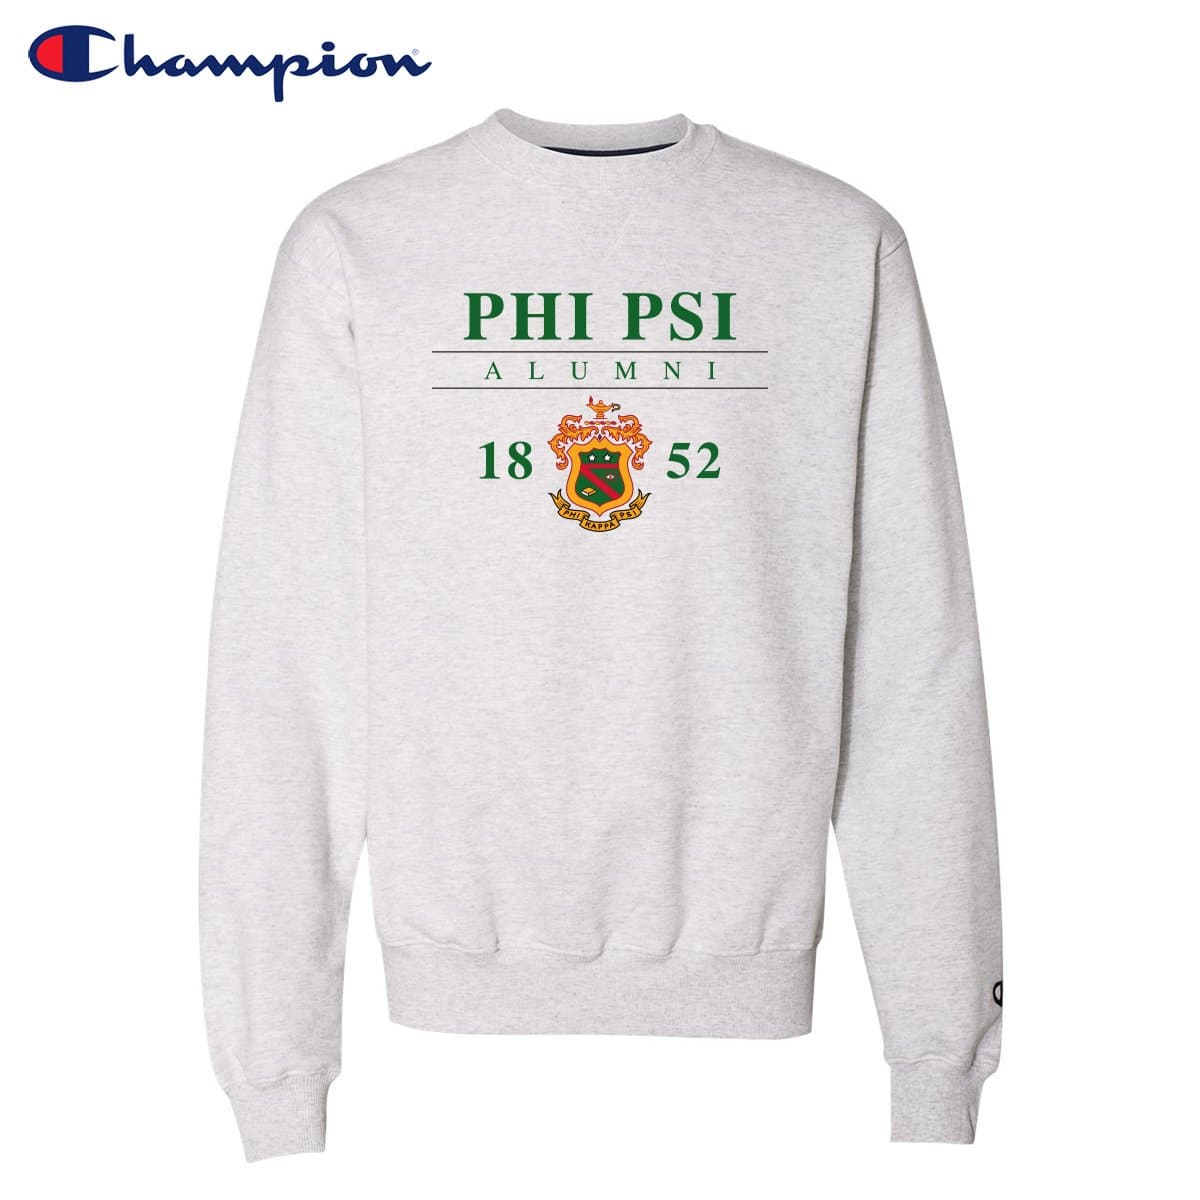 Phi Psi Alumni Champion Crewneck | Phi Kappa Psi | Sweatshirts > Crewneck sweatshirts